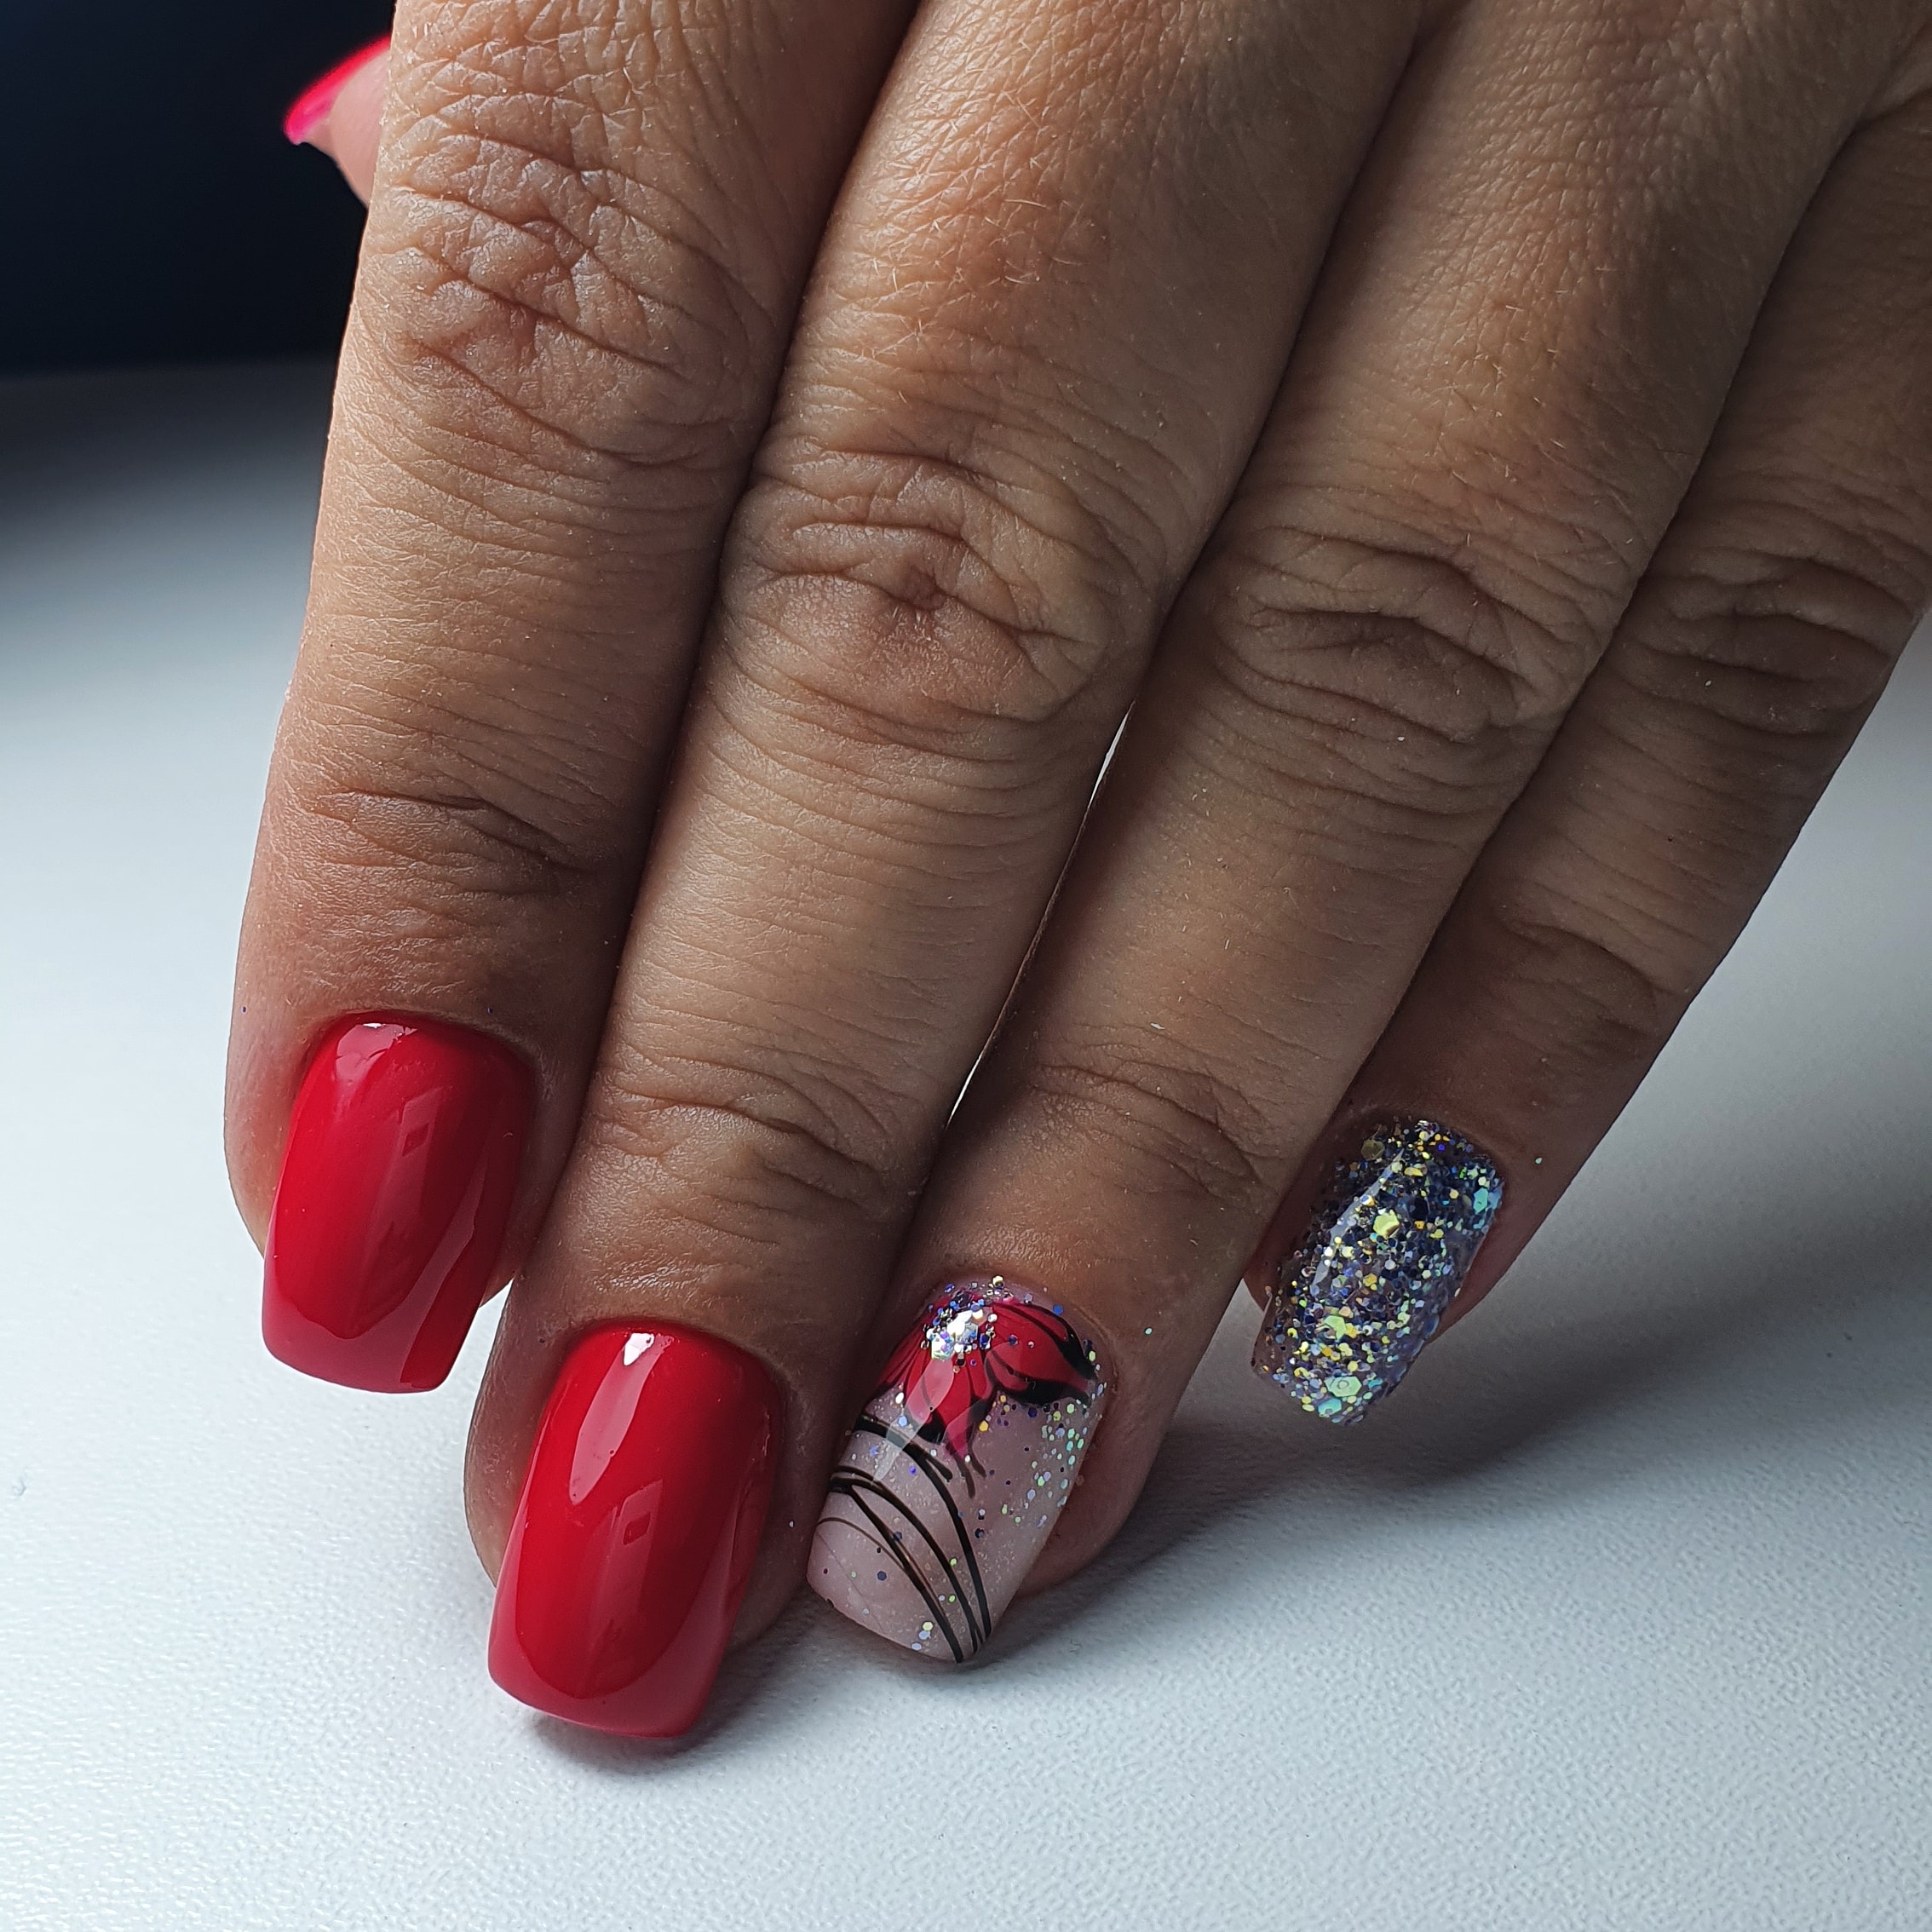 Маникюр с цветочным рисунком, серебряными блёстками и паутинкой в красном цвете на короткие ногти.